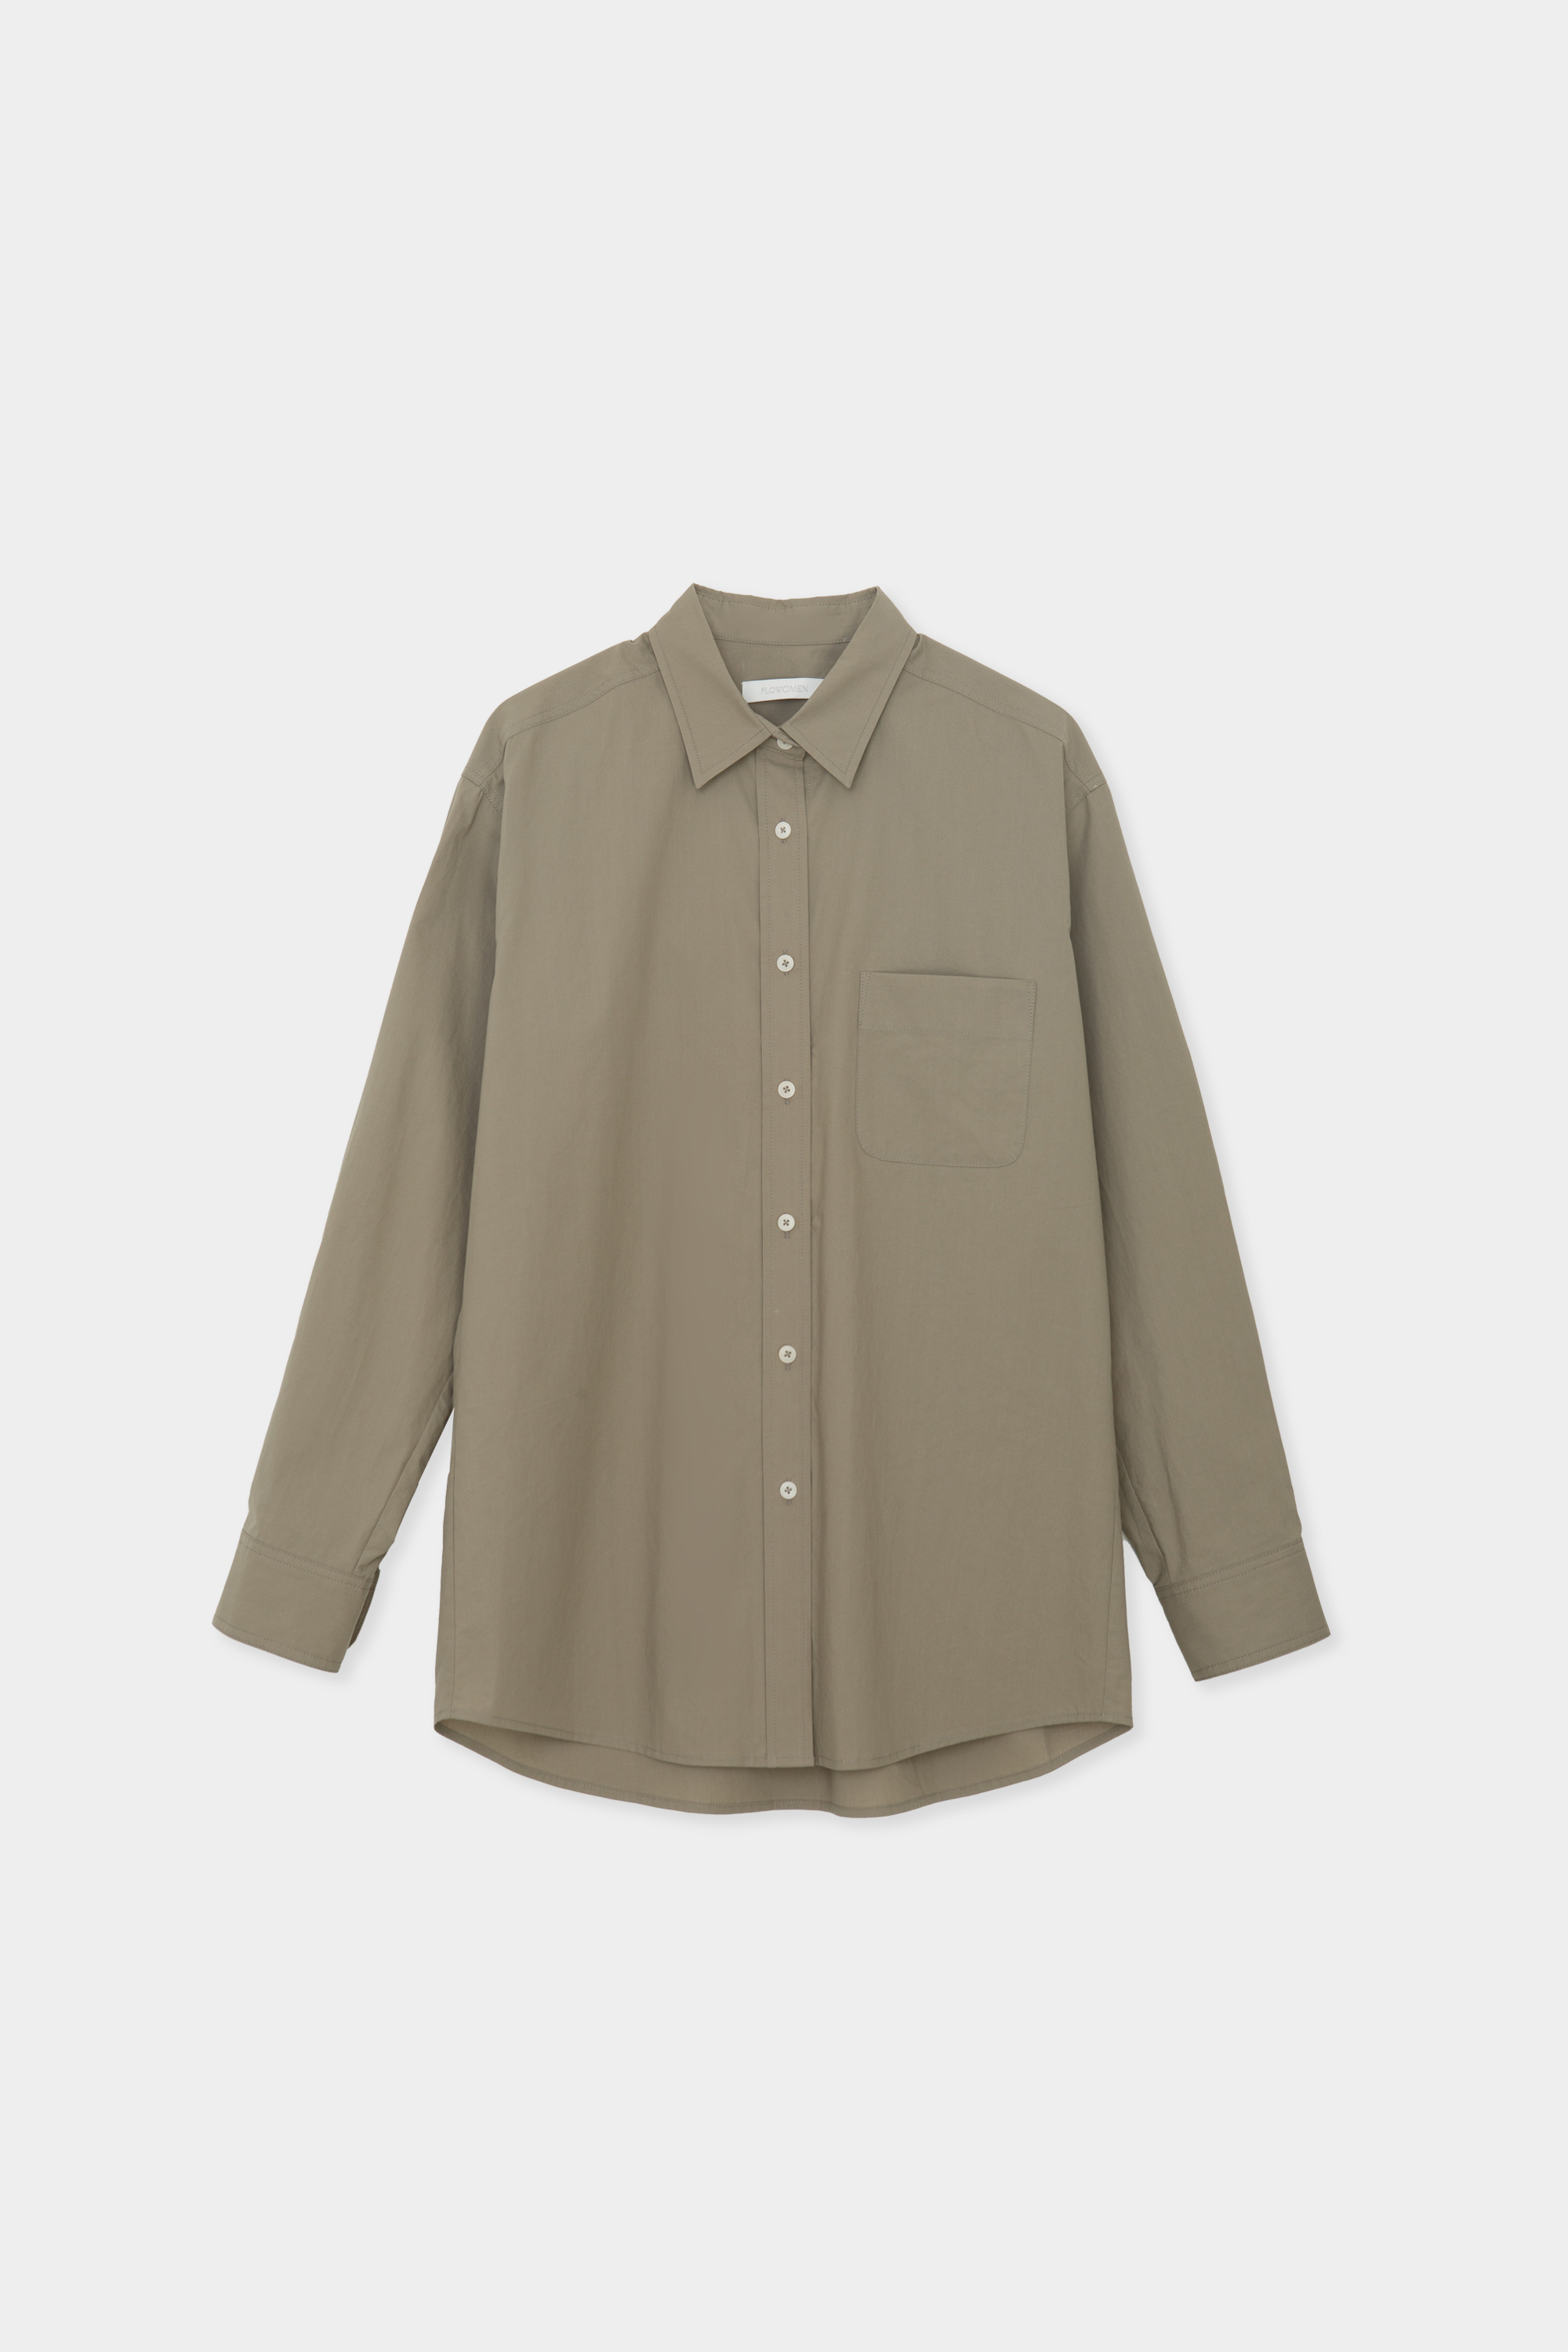 Color Point Cotton Shirt (Olive Khaki)